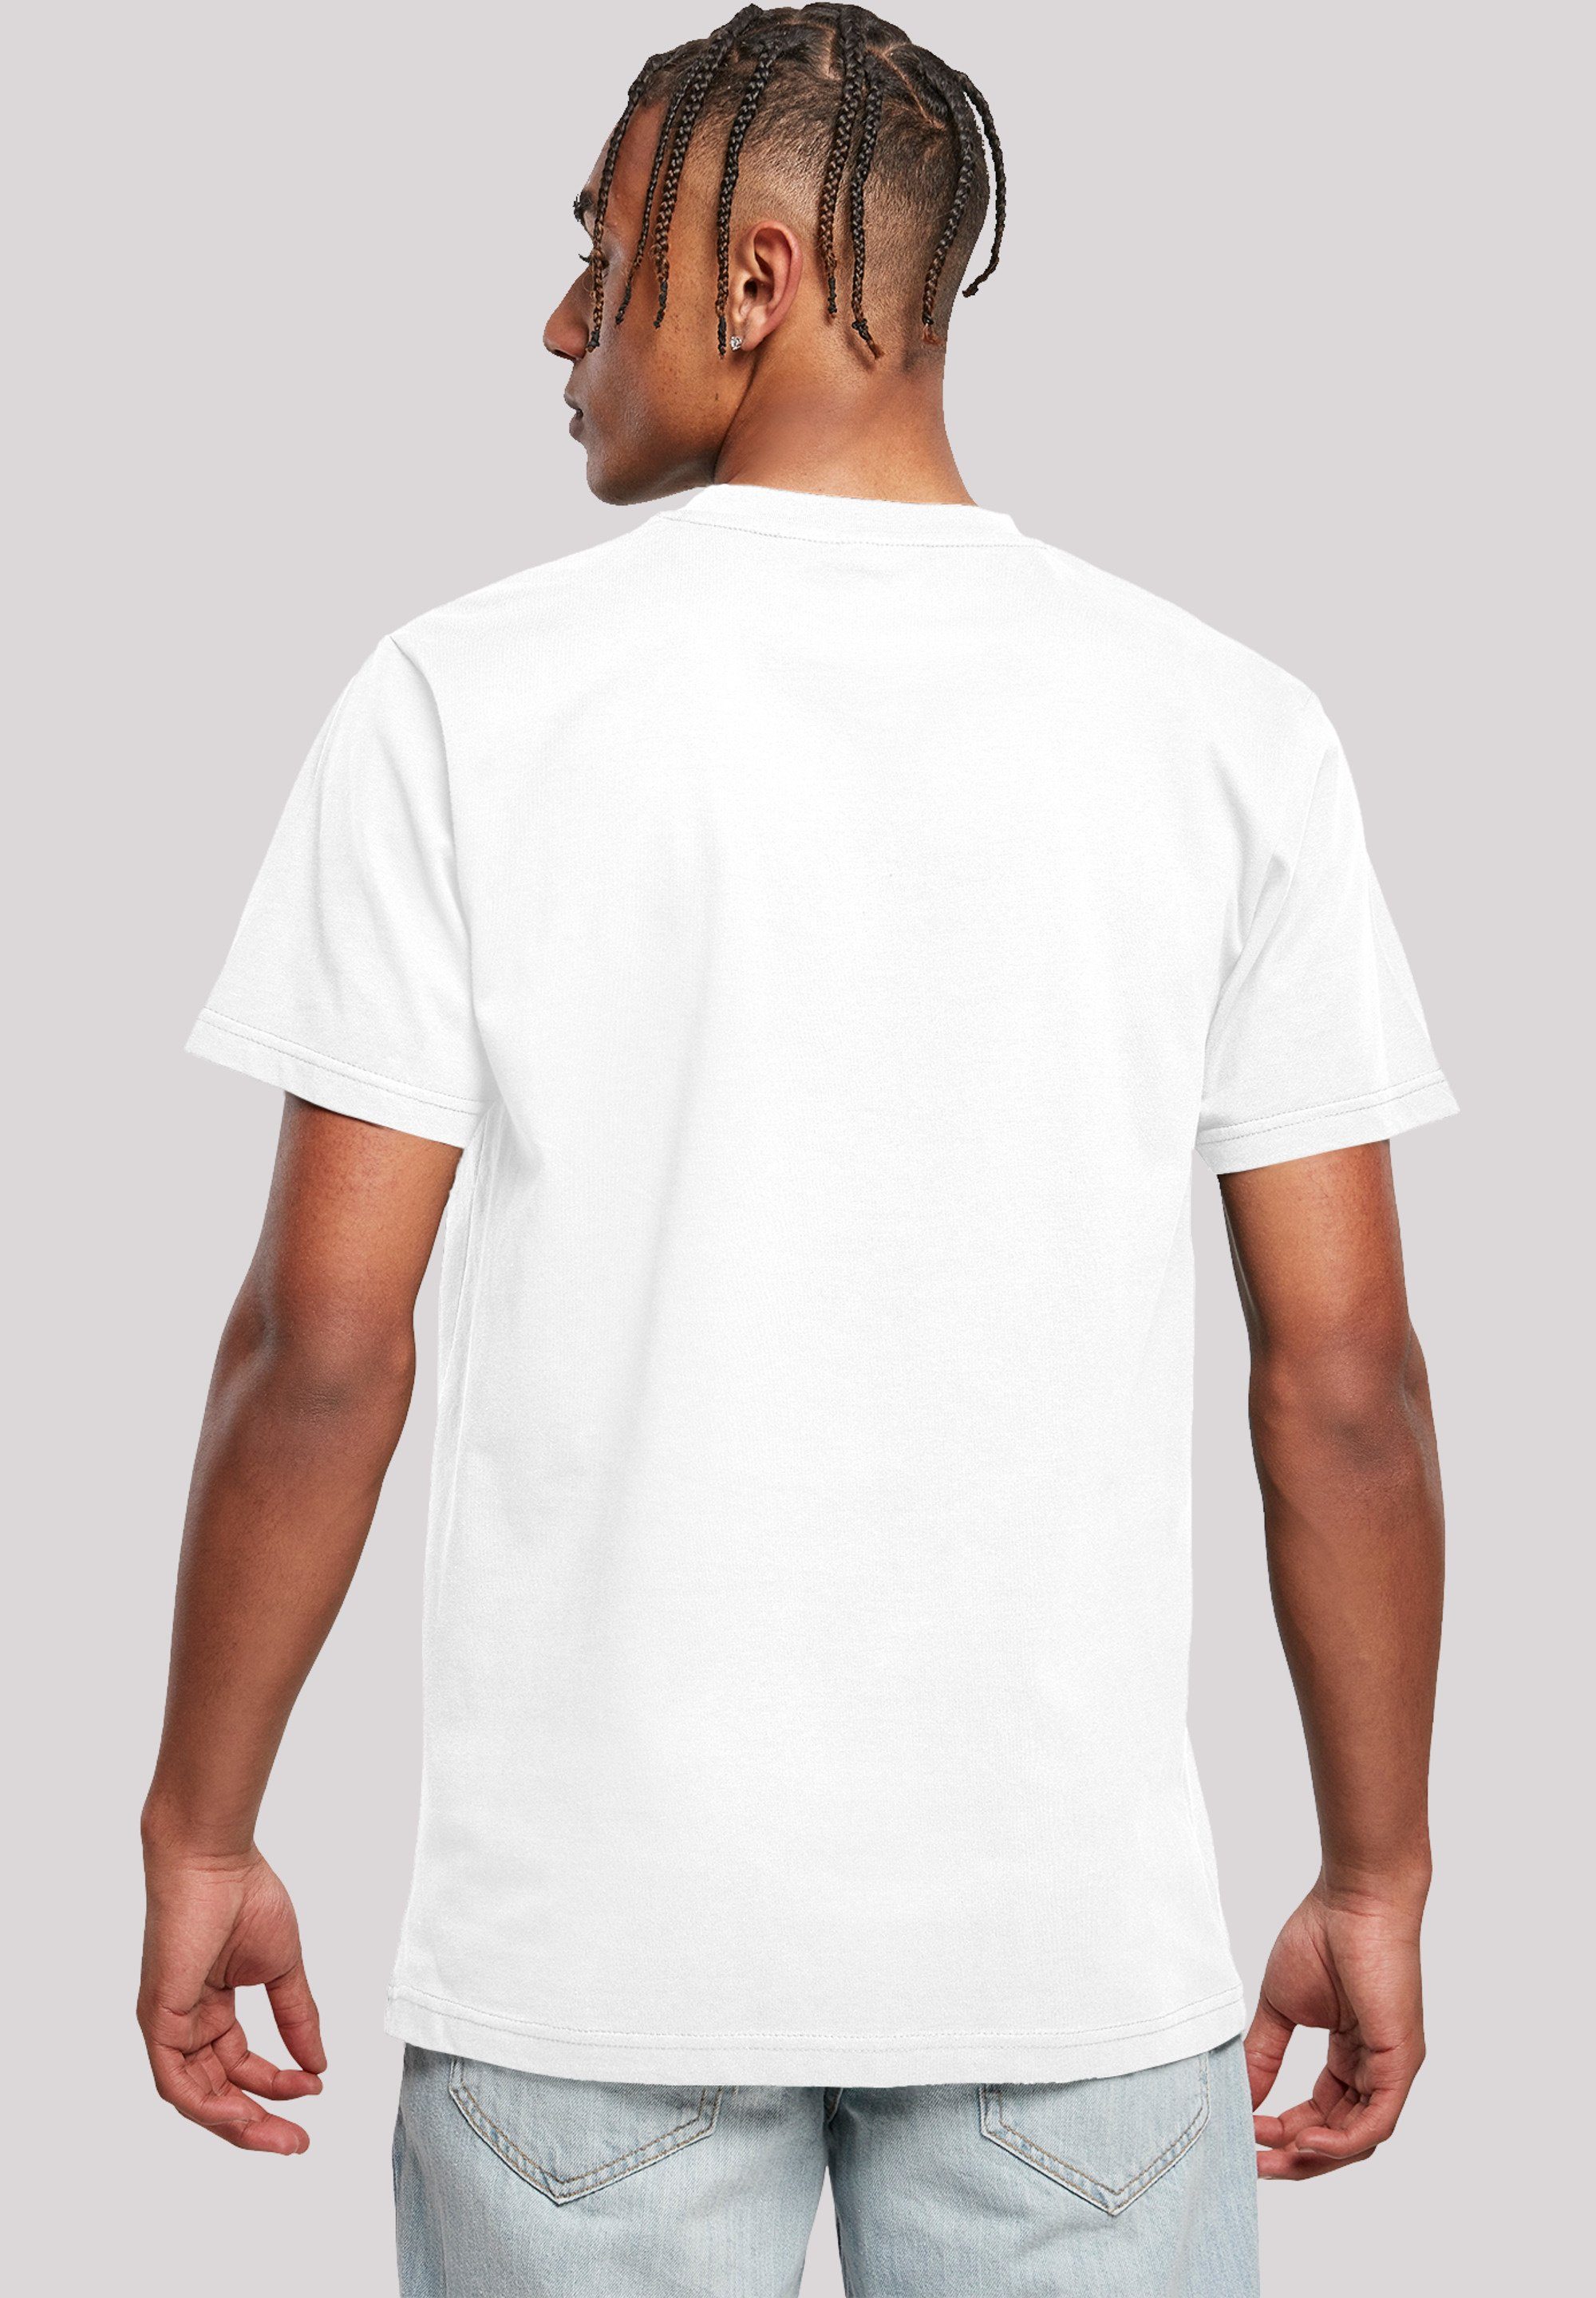 Bamm T-Shirt F4NT4STIC Herren,Premium T-Shirt weiß Merch,Regular-Fit,Basic,Bedruckt Familie Die And Bamm Dino Feuerstein